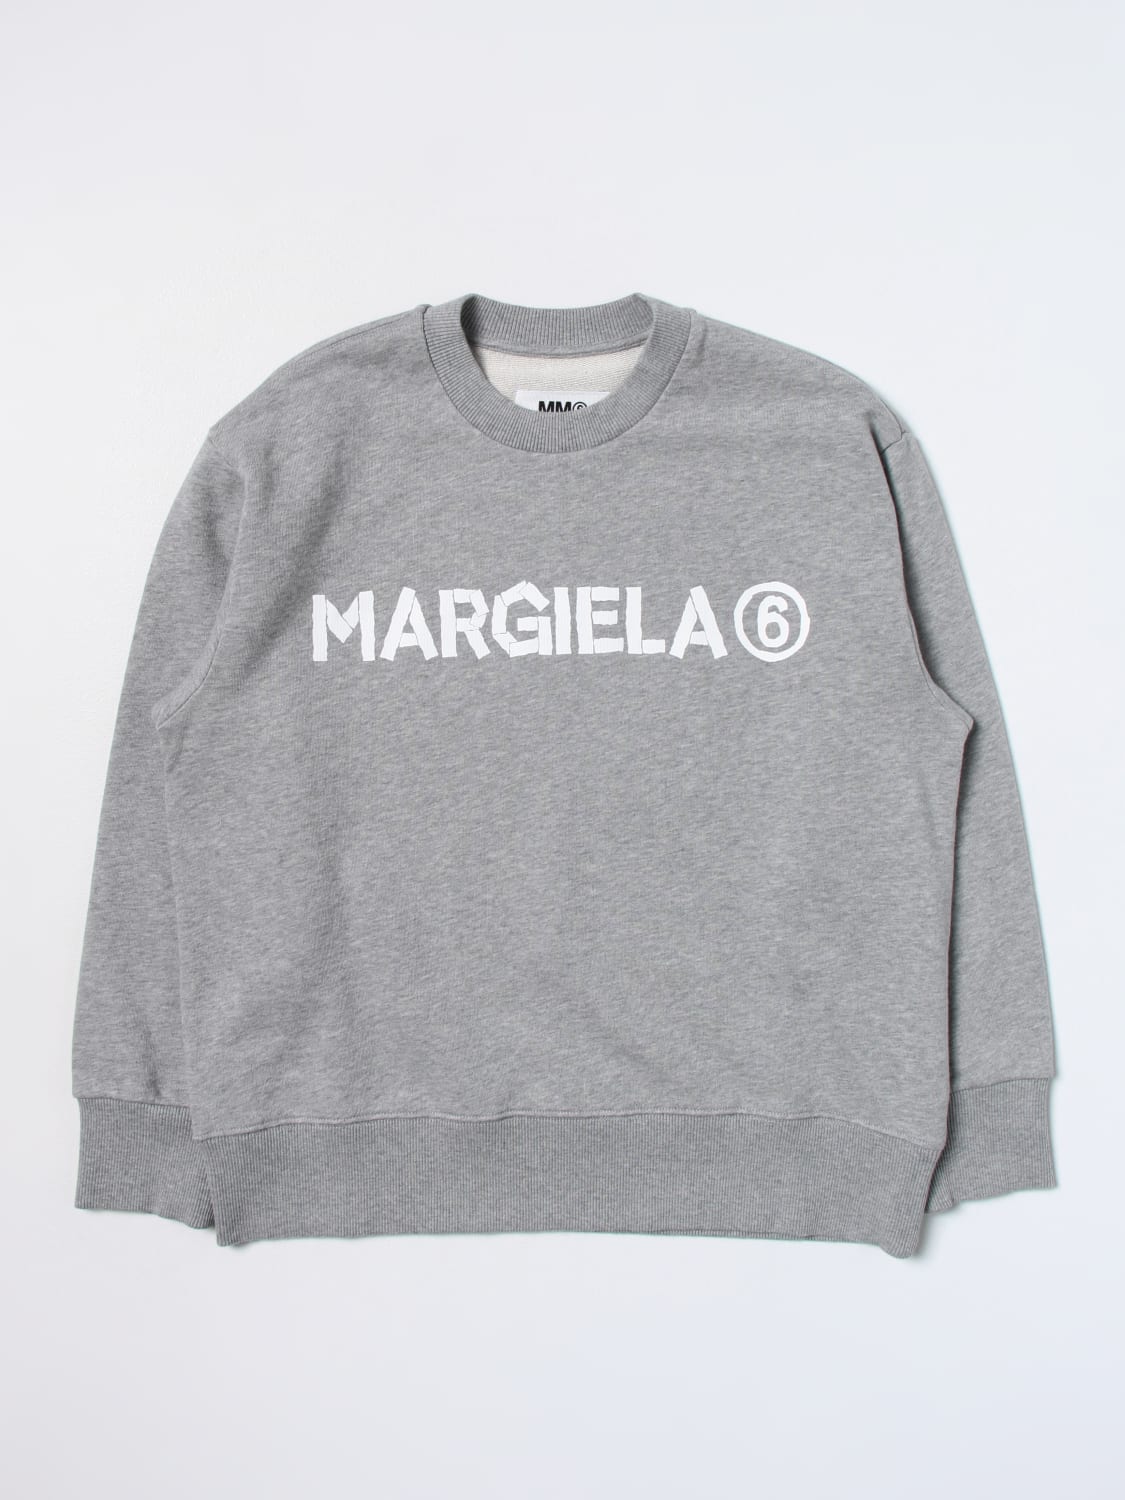 MM6 Maison Marglela セーター